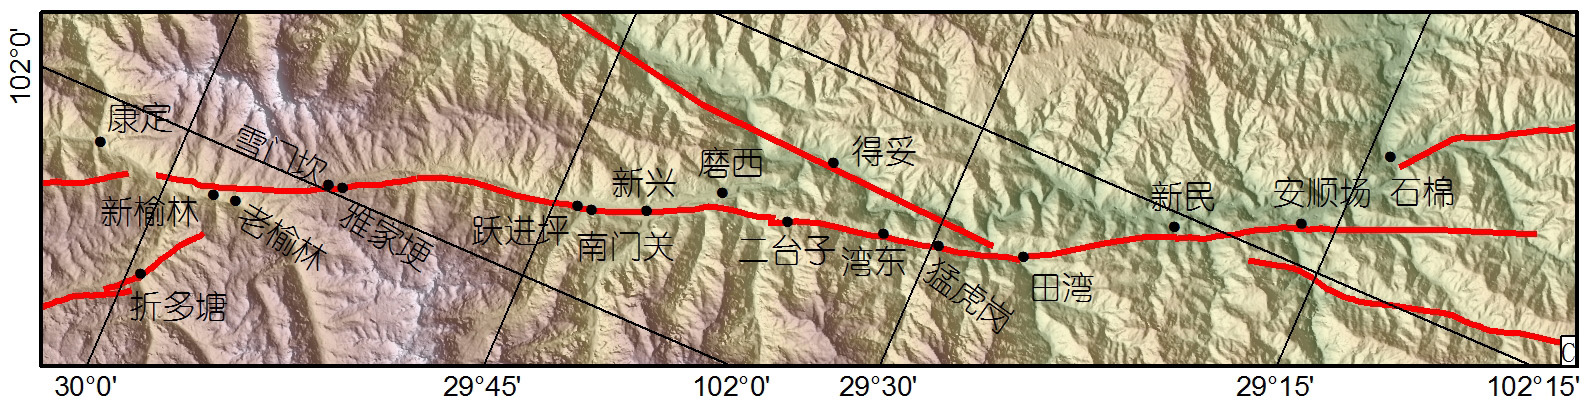 磨西地震破裂分布.jpg